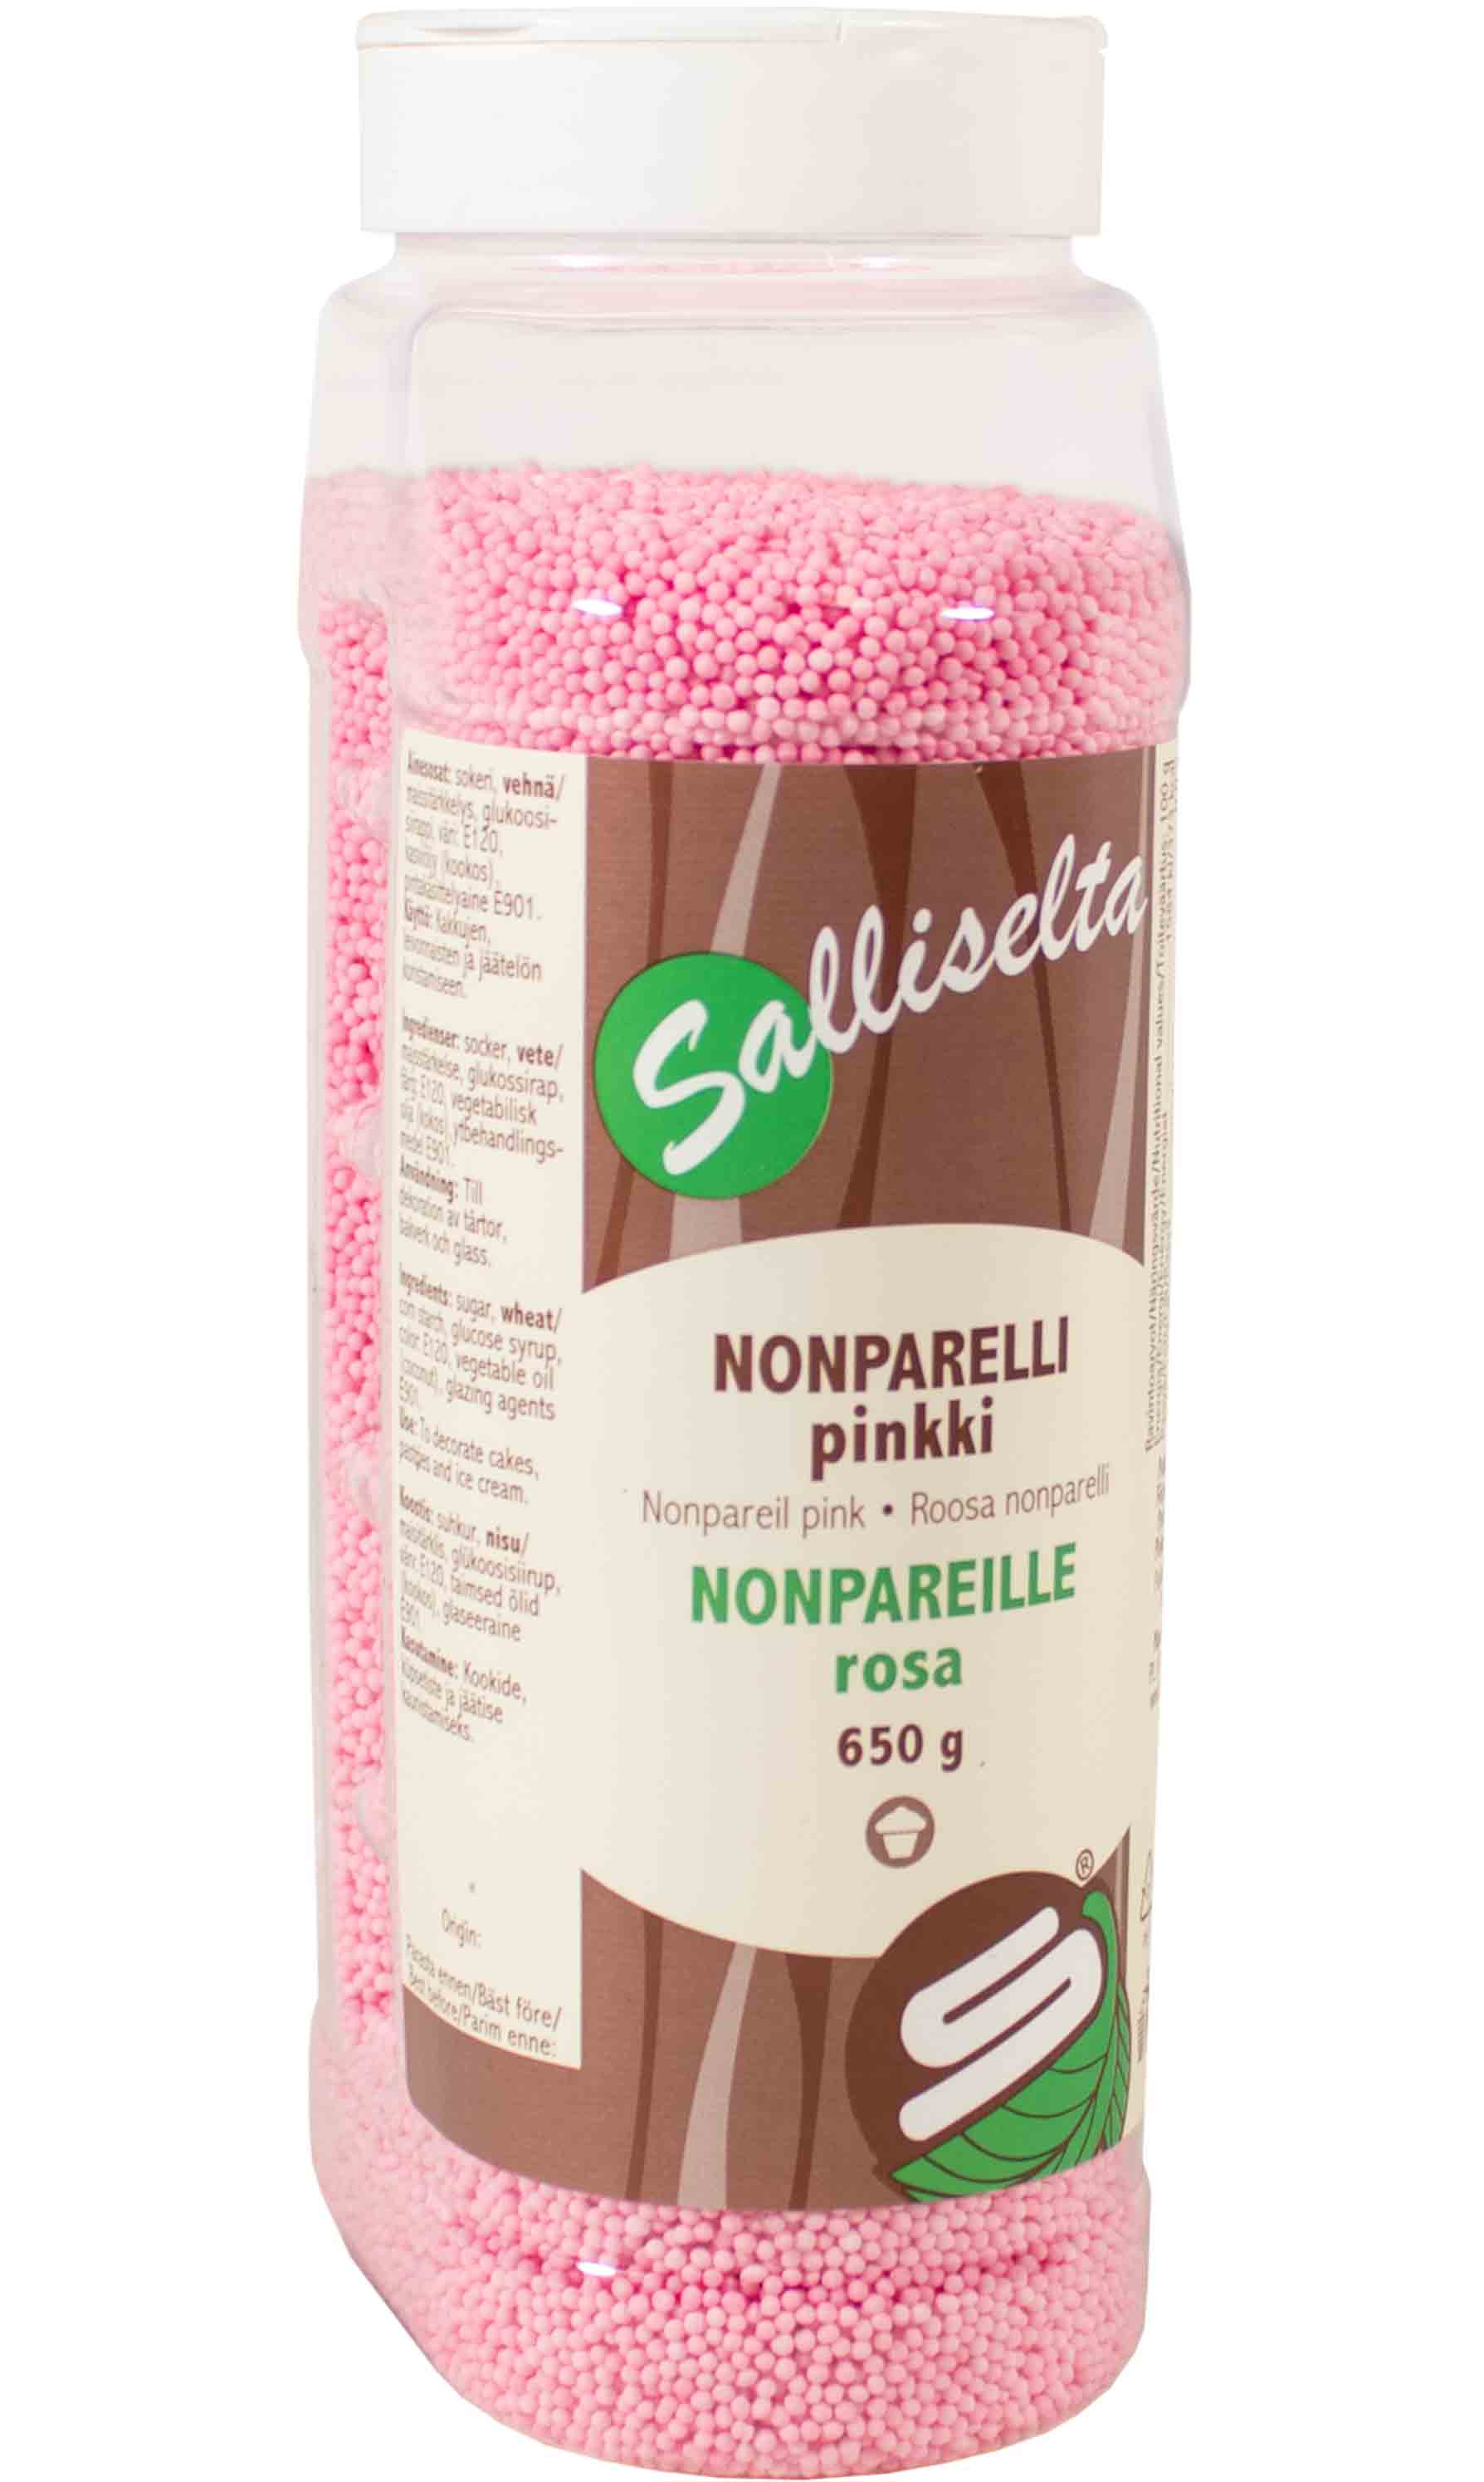 Nonpareils pink 650 g